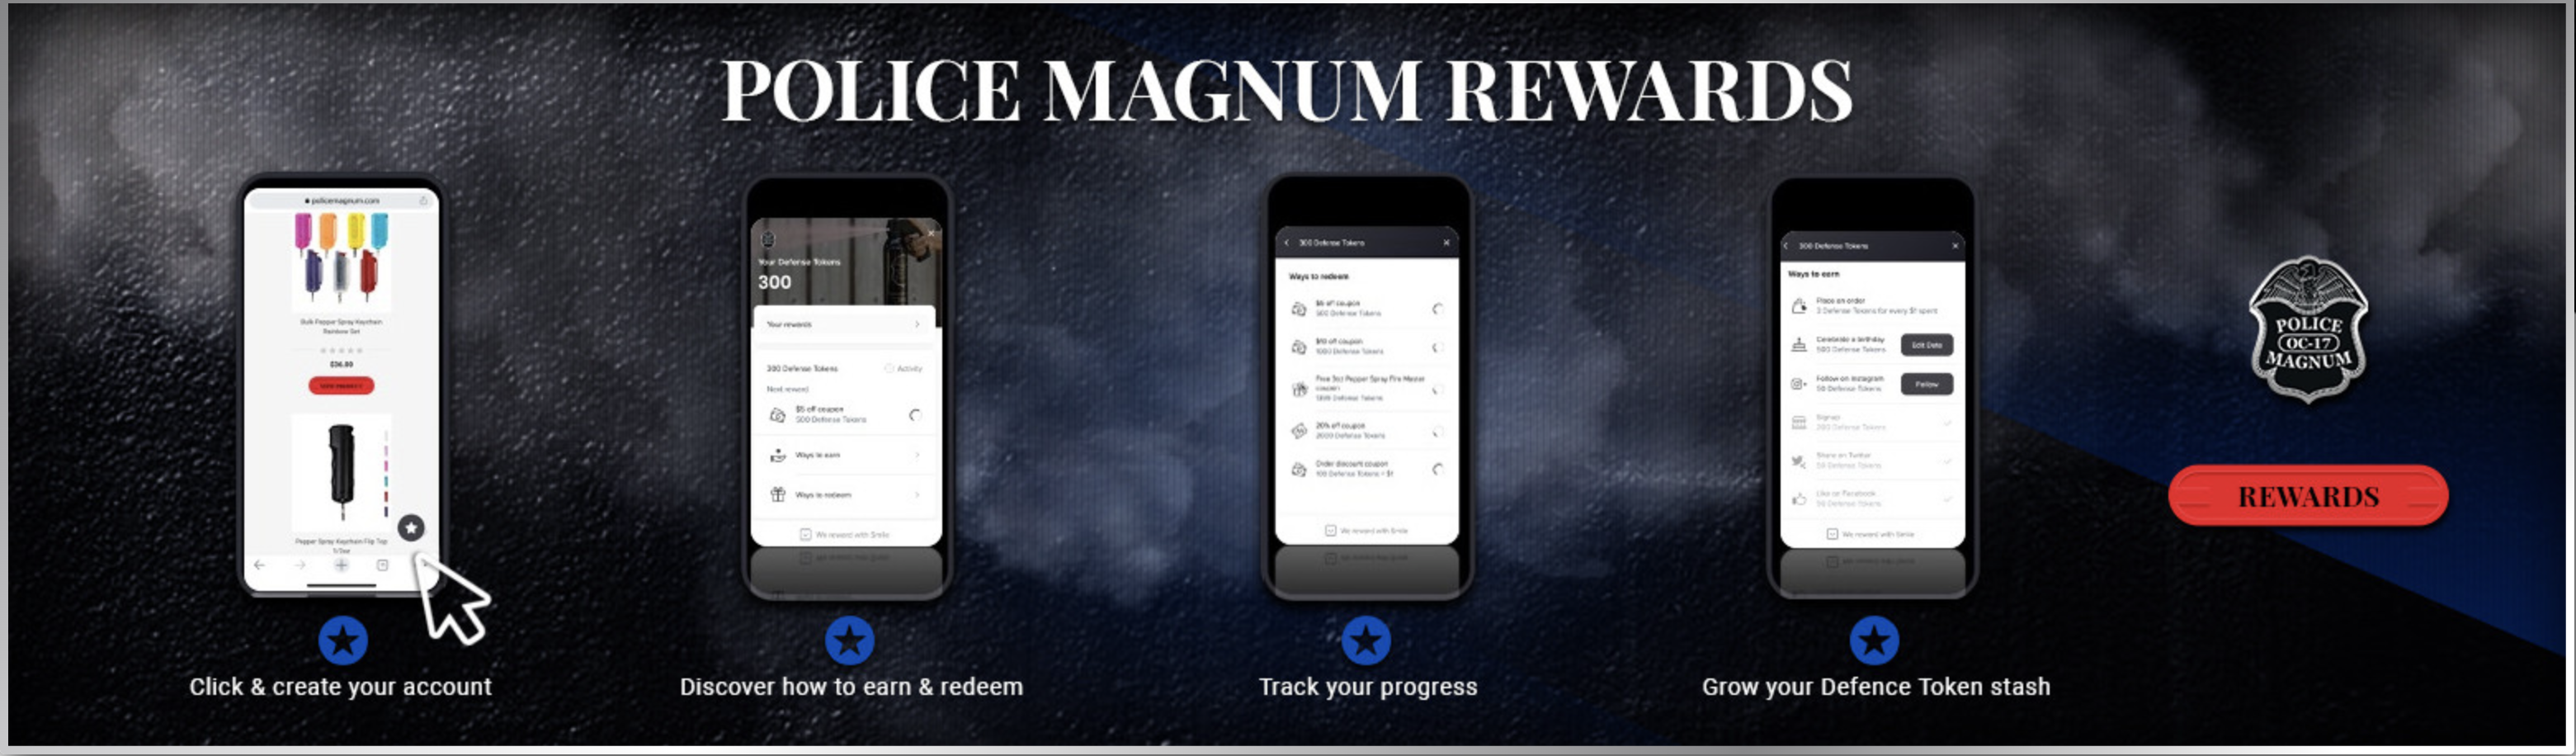 Police Magnum Rewards